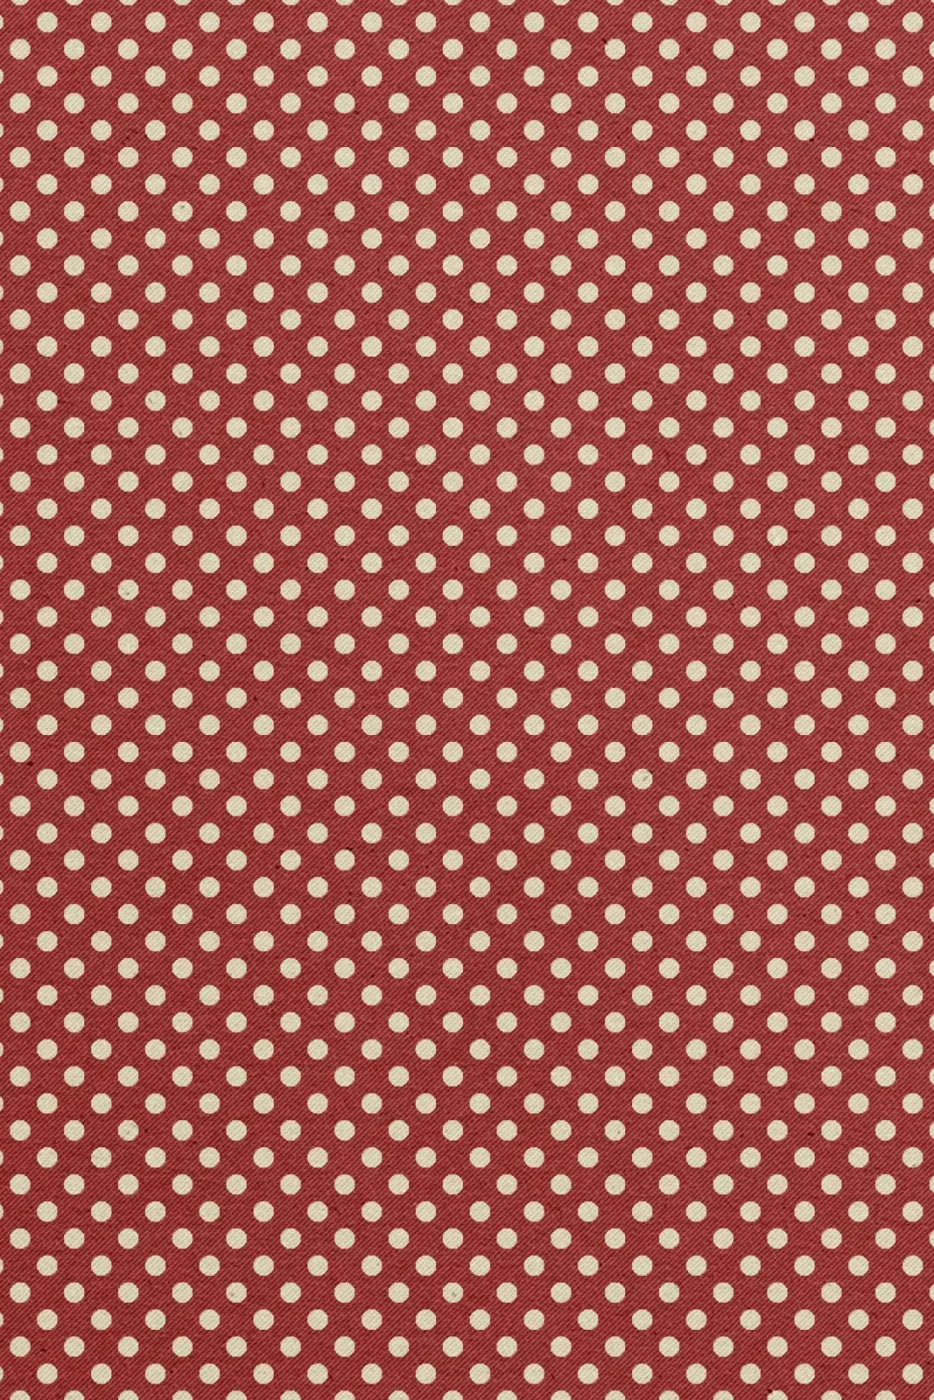 Cherry Berry 4X5 Rubbermat Floor ( 48 X 60 Inch ) Backdrop